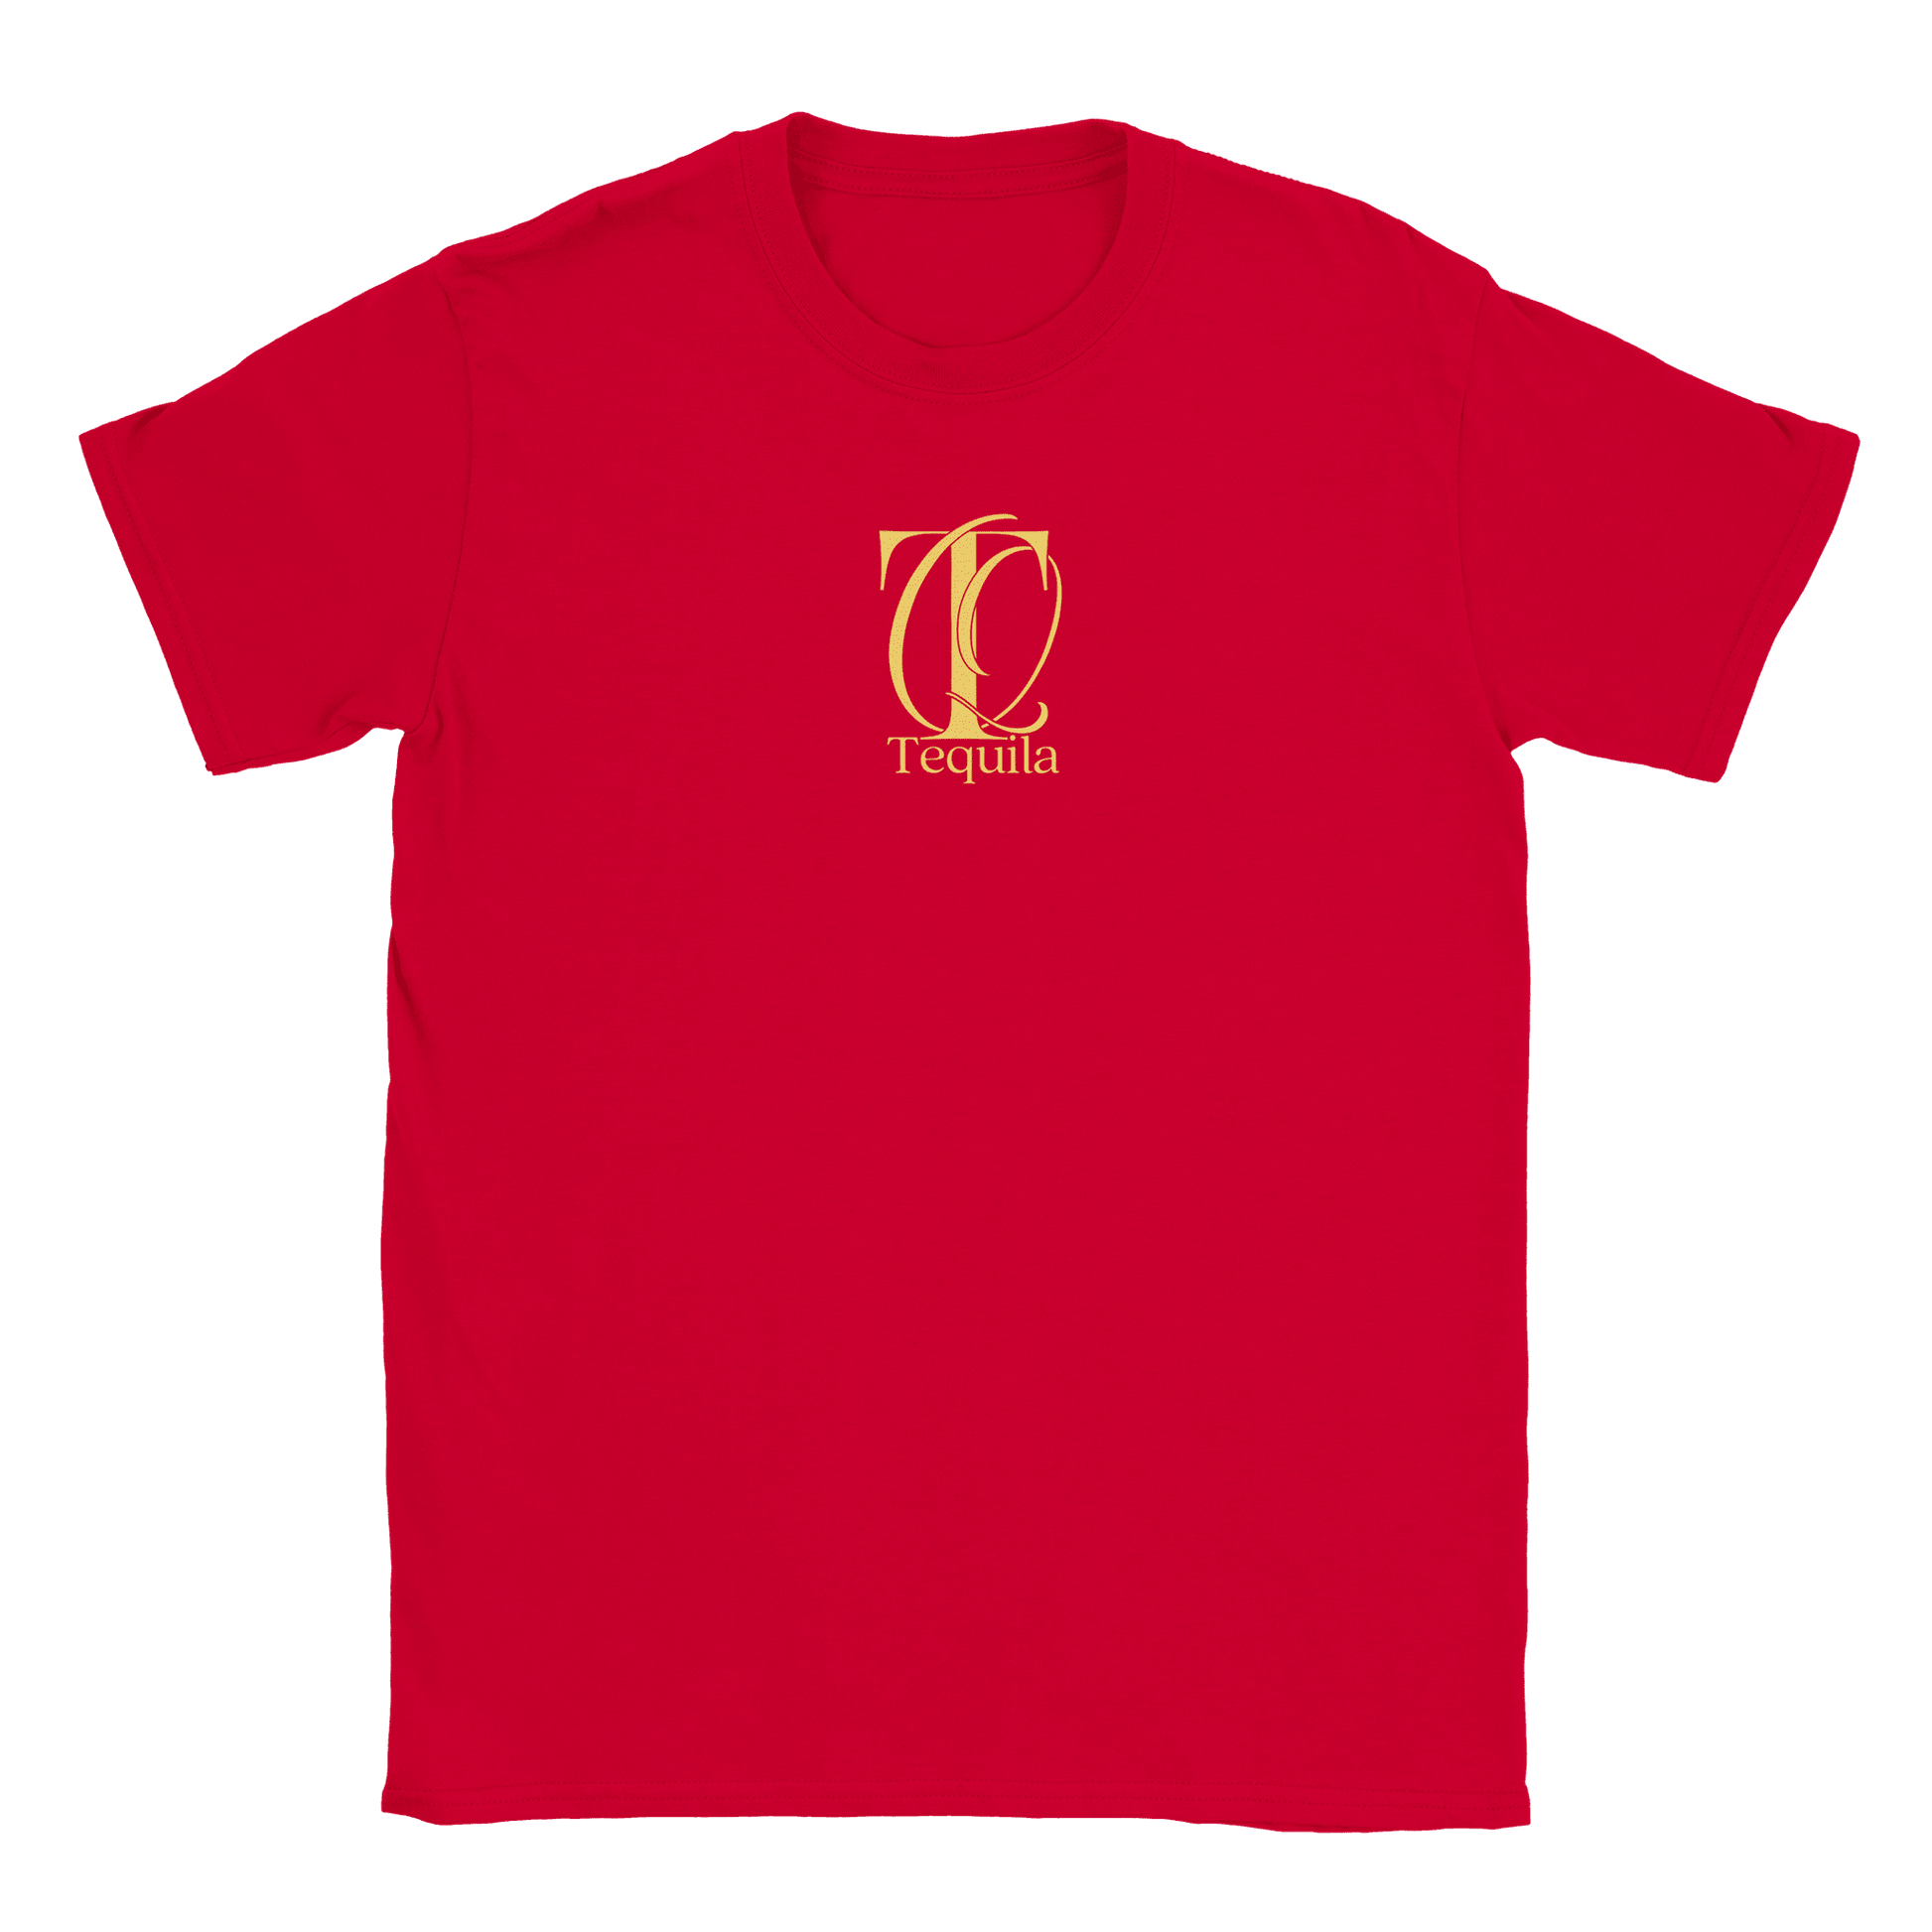 Tequila - T-shirt Röd